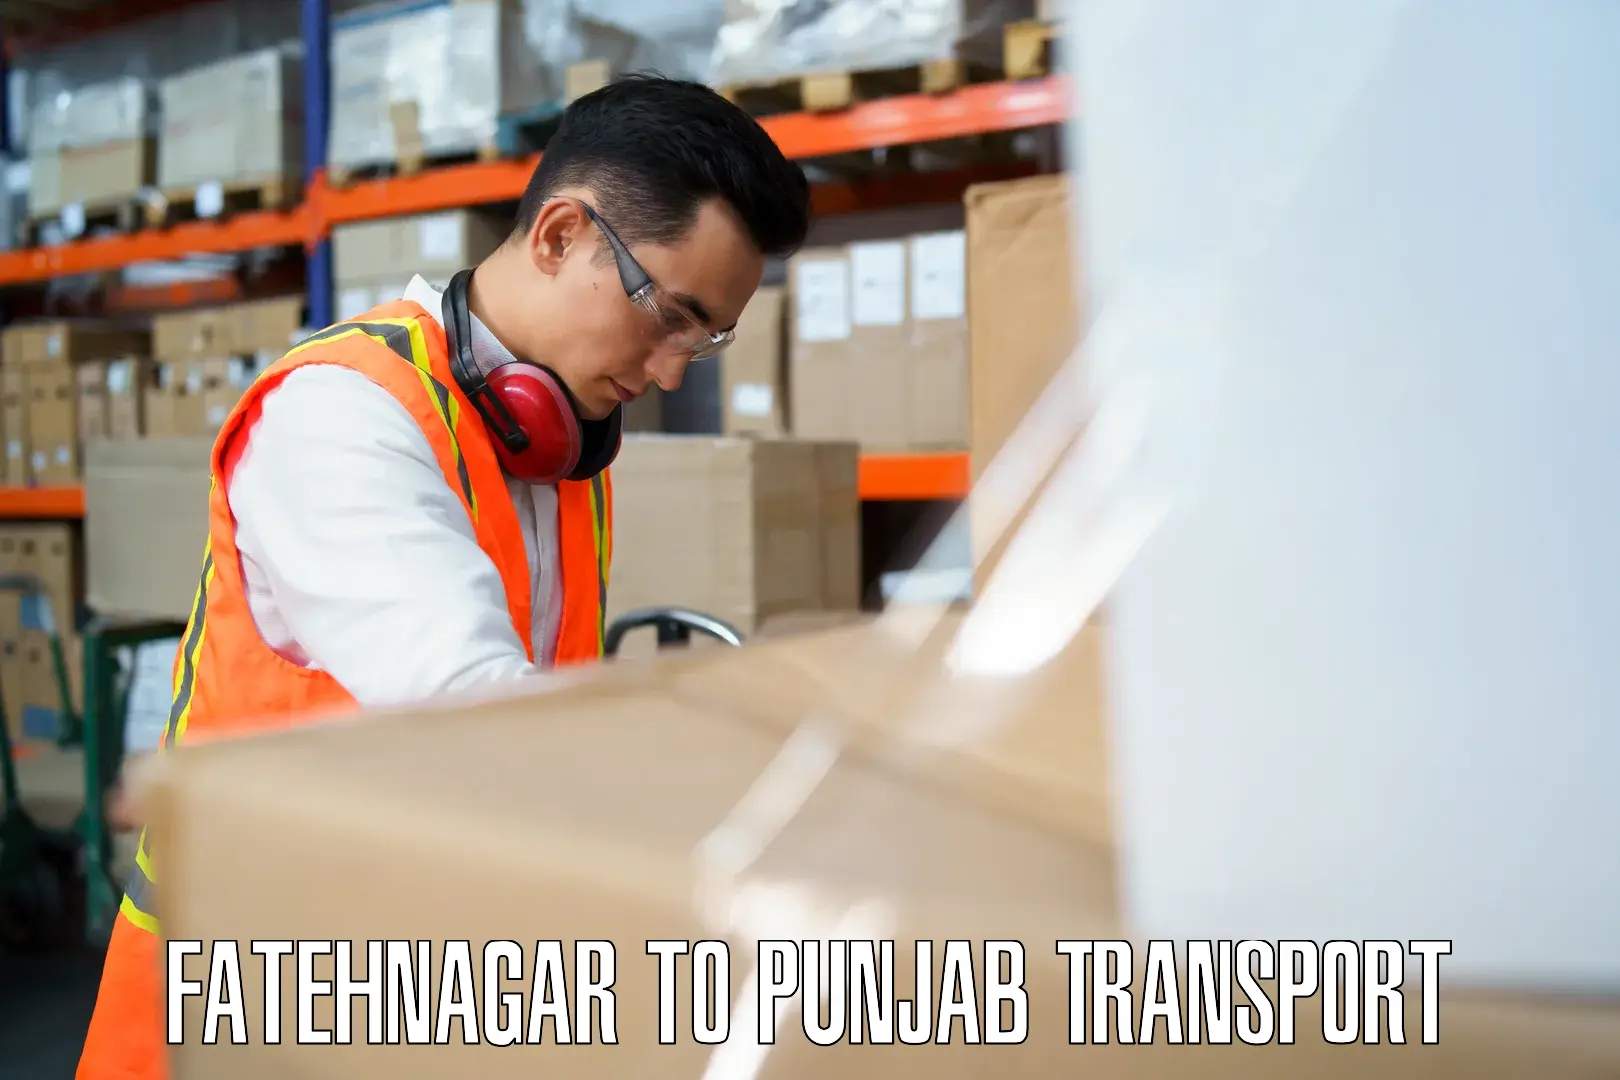 Interstate transport services Fatehnagar to Ropar